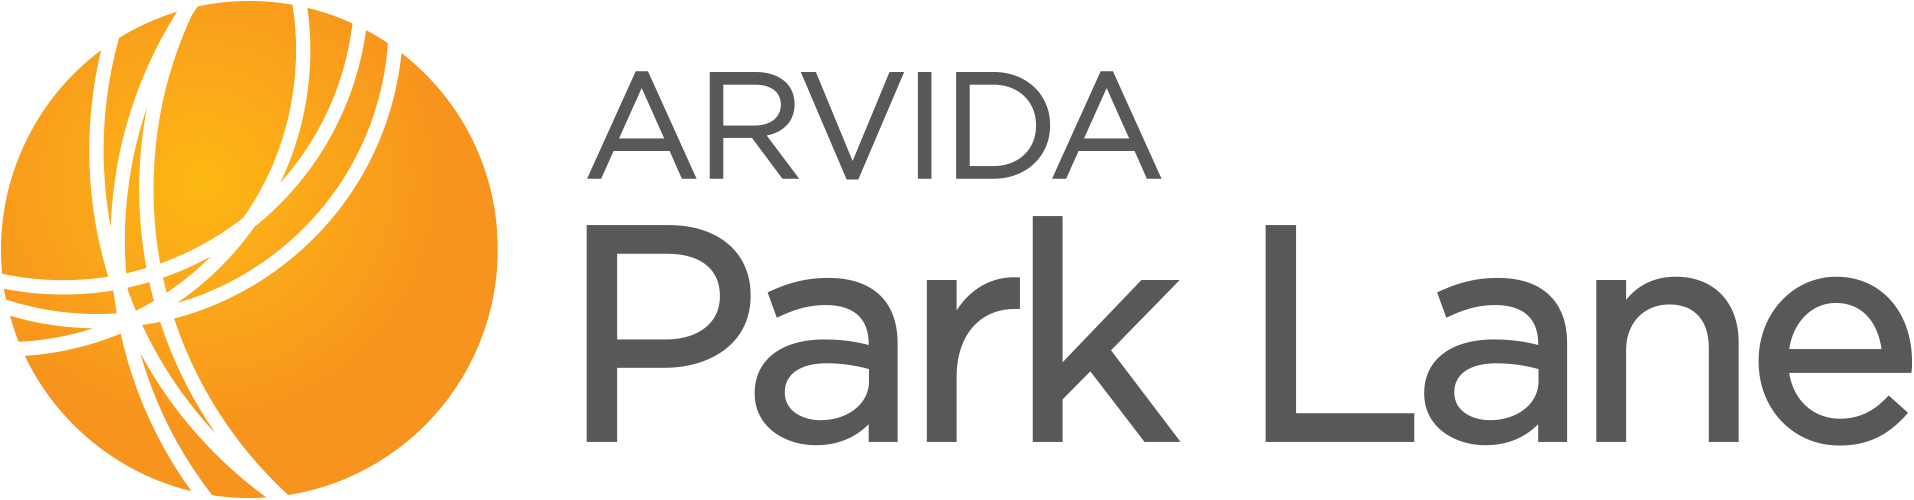 Park Lane | Arvida logo